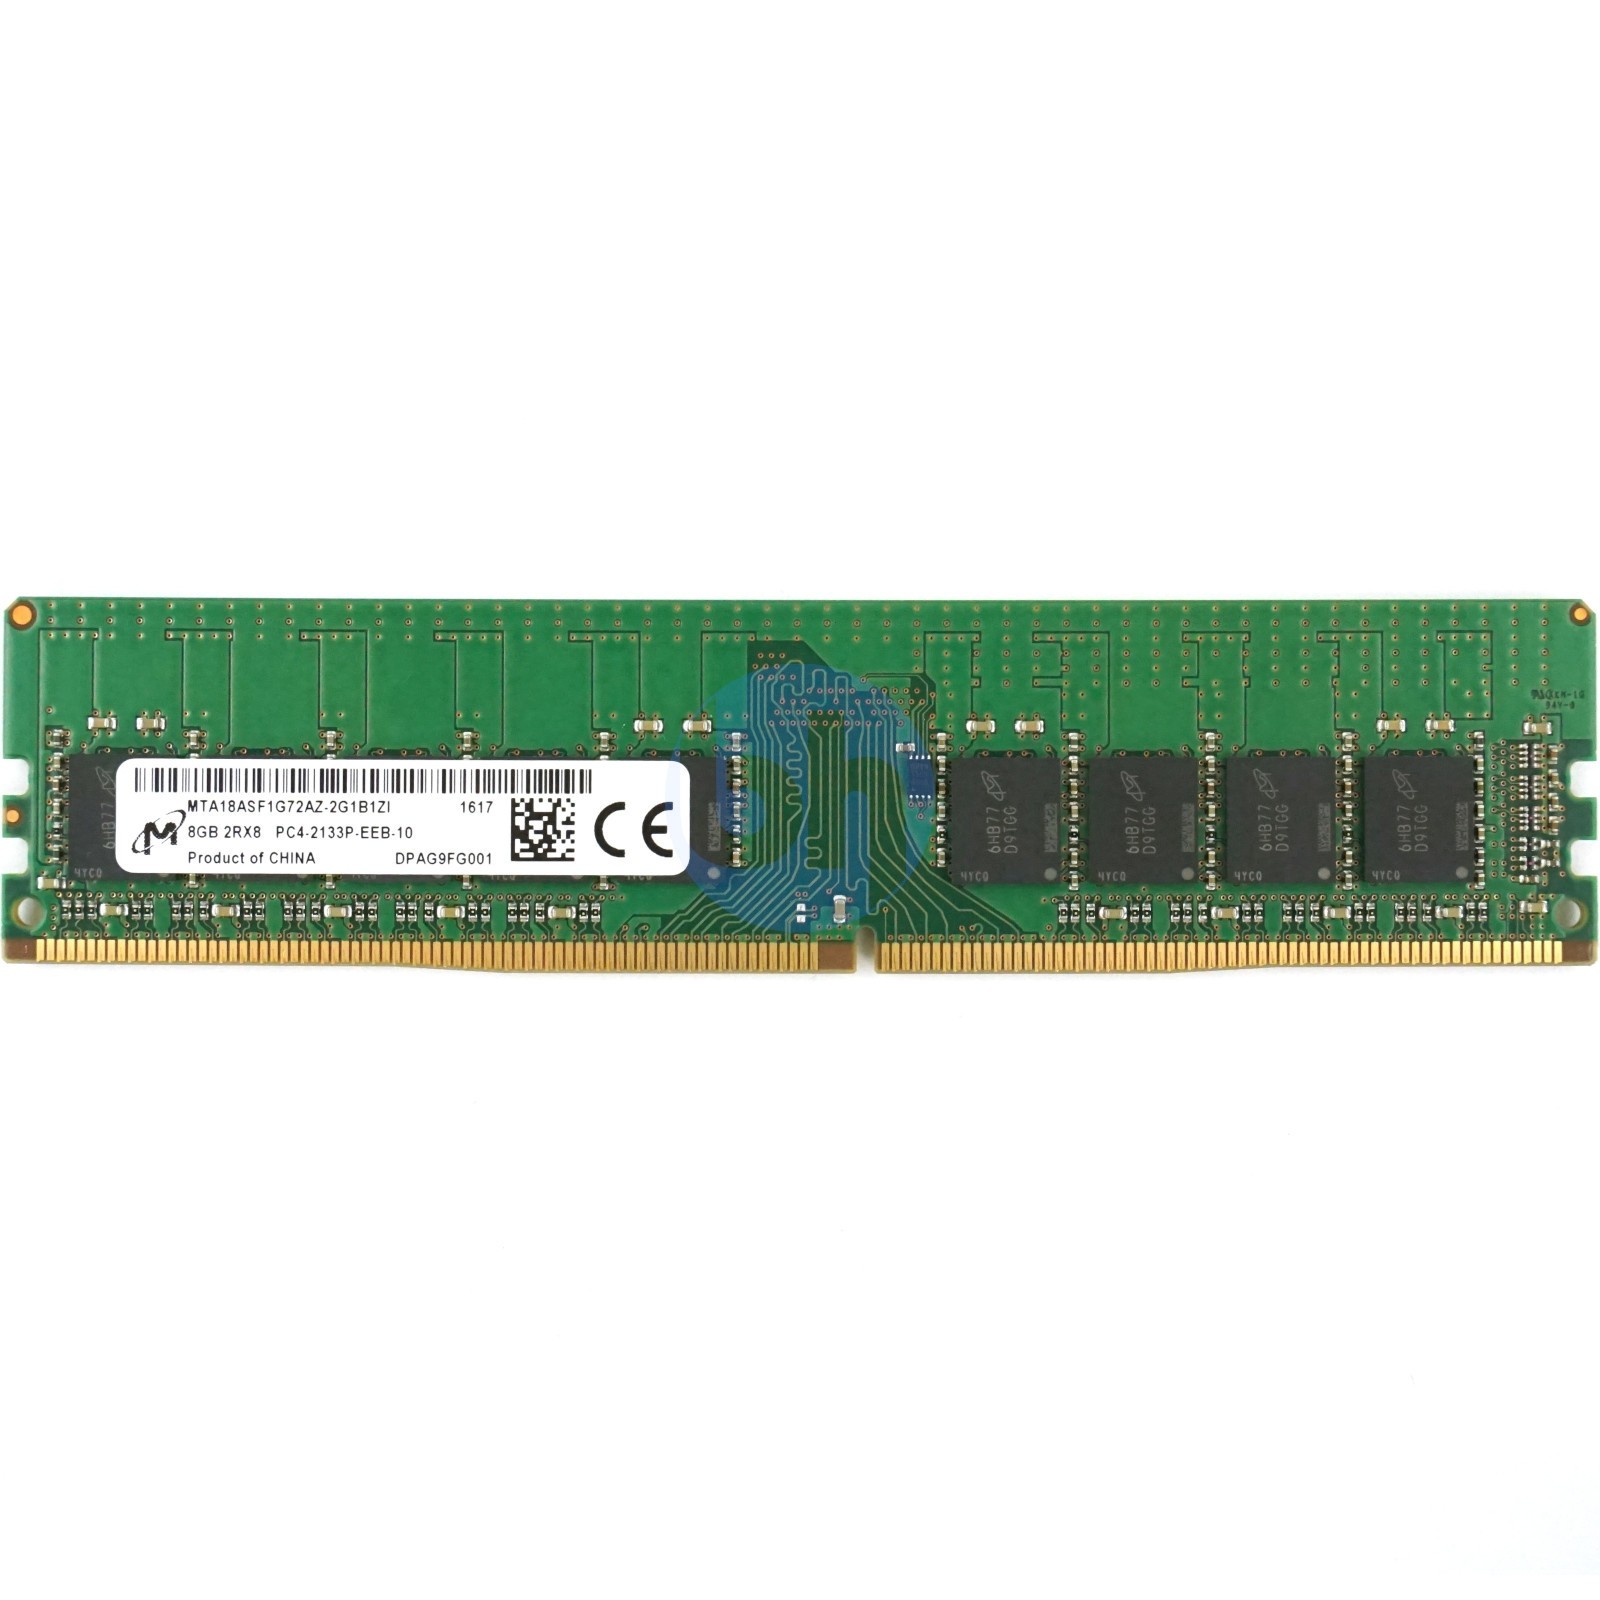 Micron - 8GB PC4-17000P-E (DDR4-2133MHz, 2RX8)